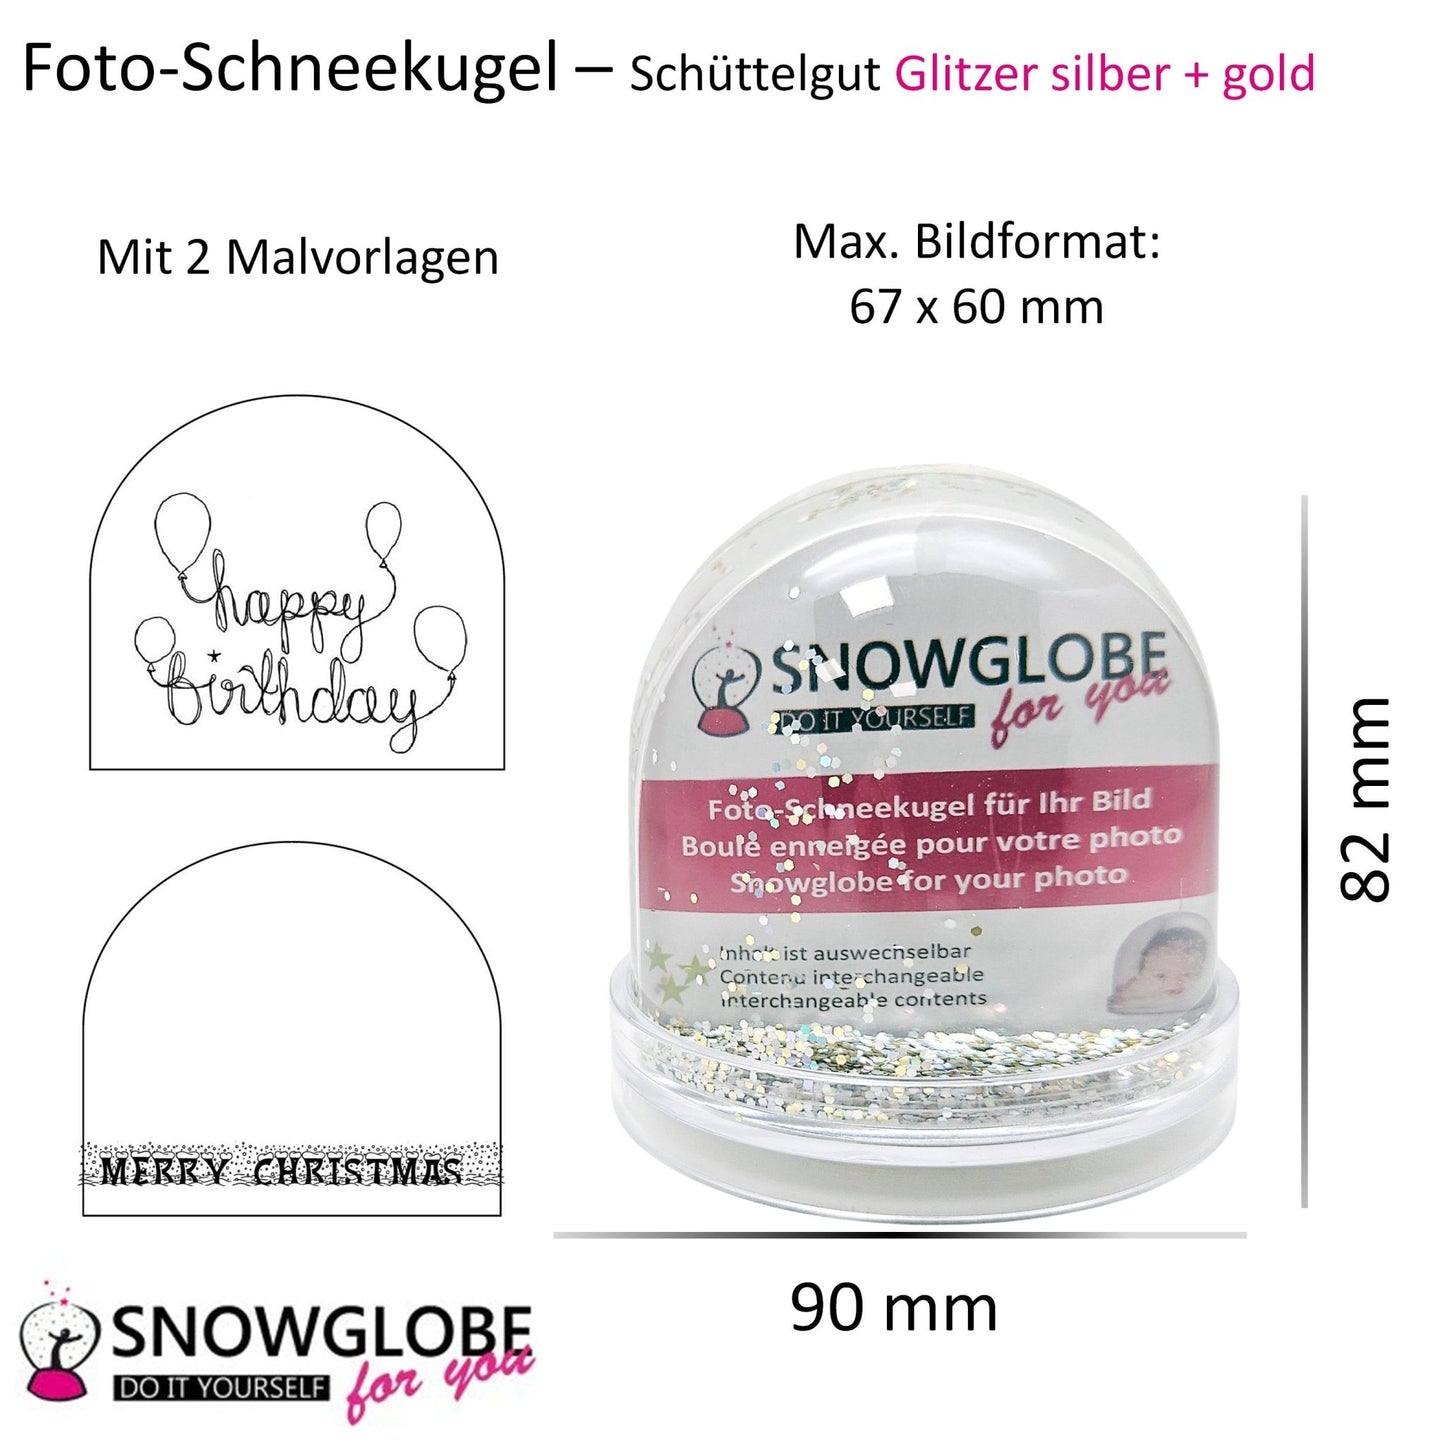 Foto-Schneekugel groß mit transparentem Sockel - silber gold Glitzer - Schneekugelhaus